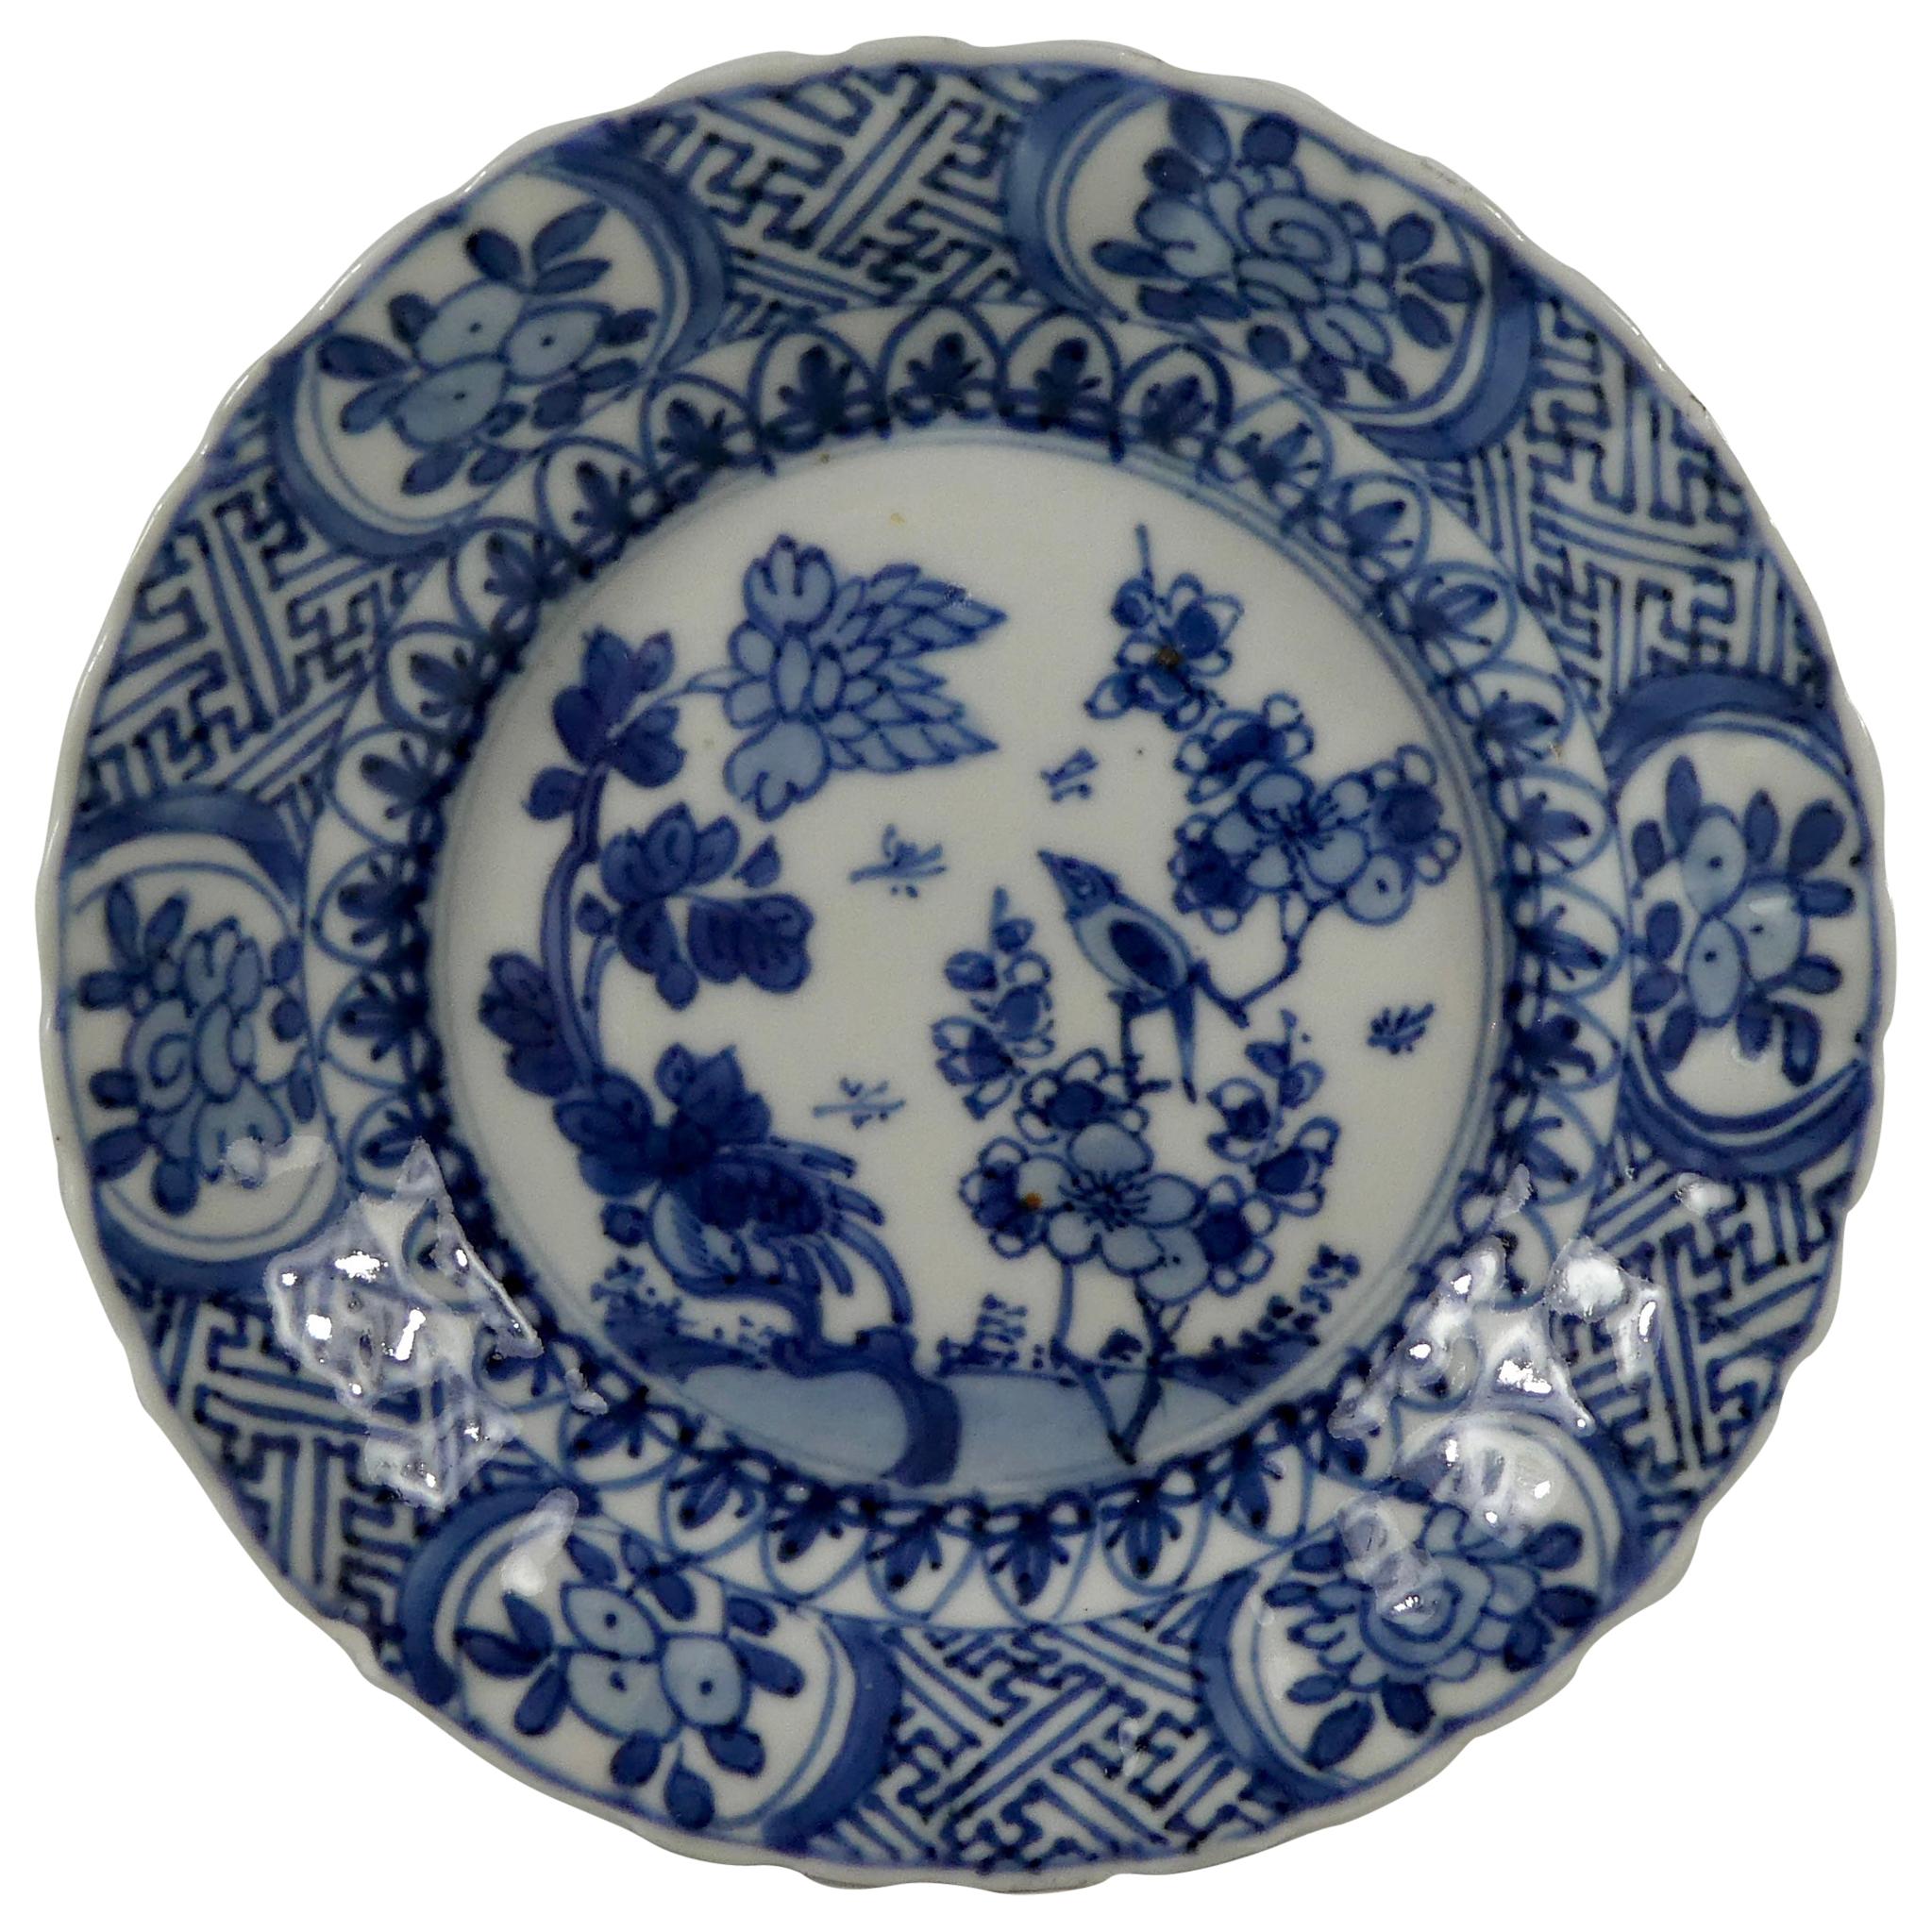 Chinese Porcelain Dish, Kangxi Period 1662-1722